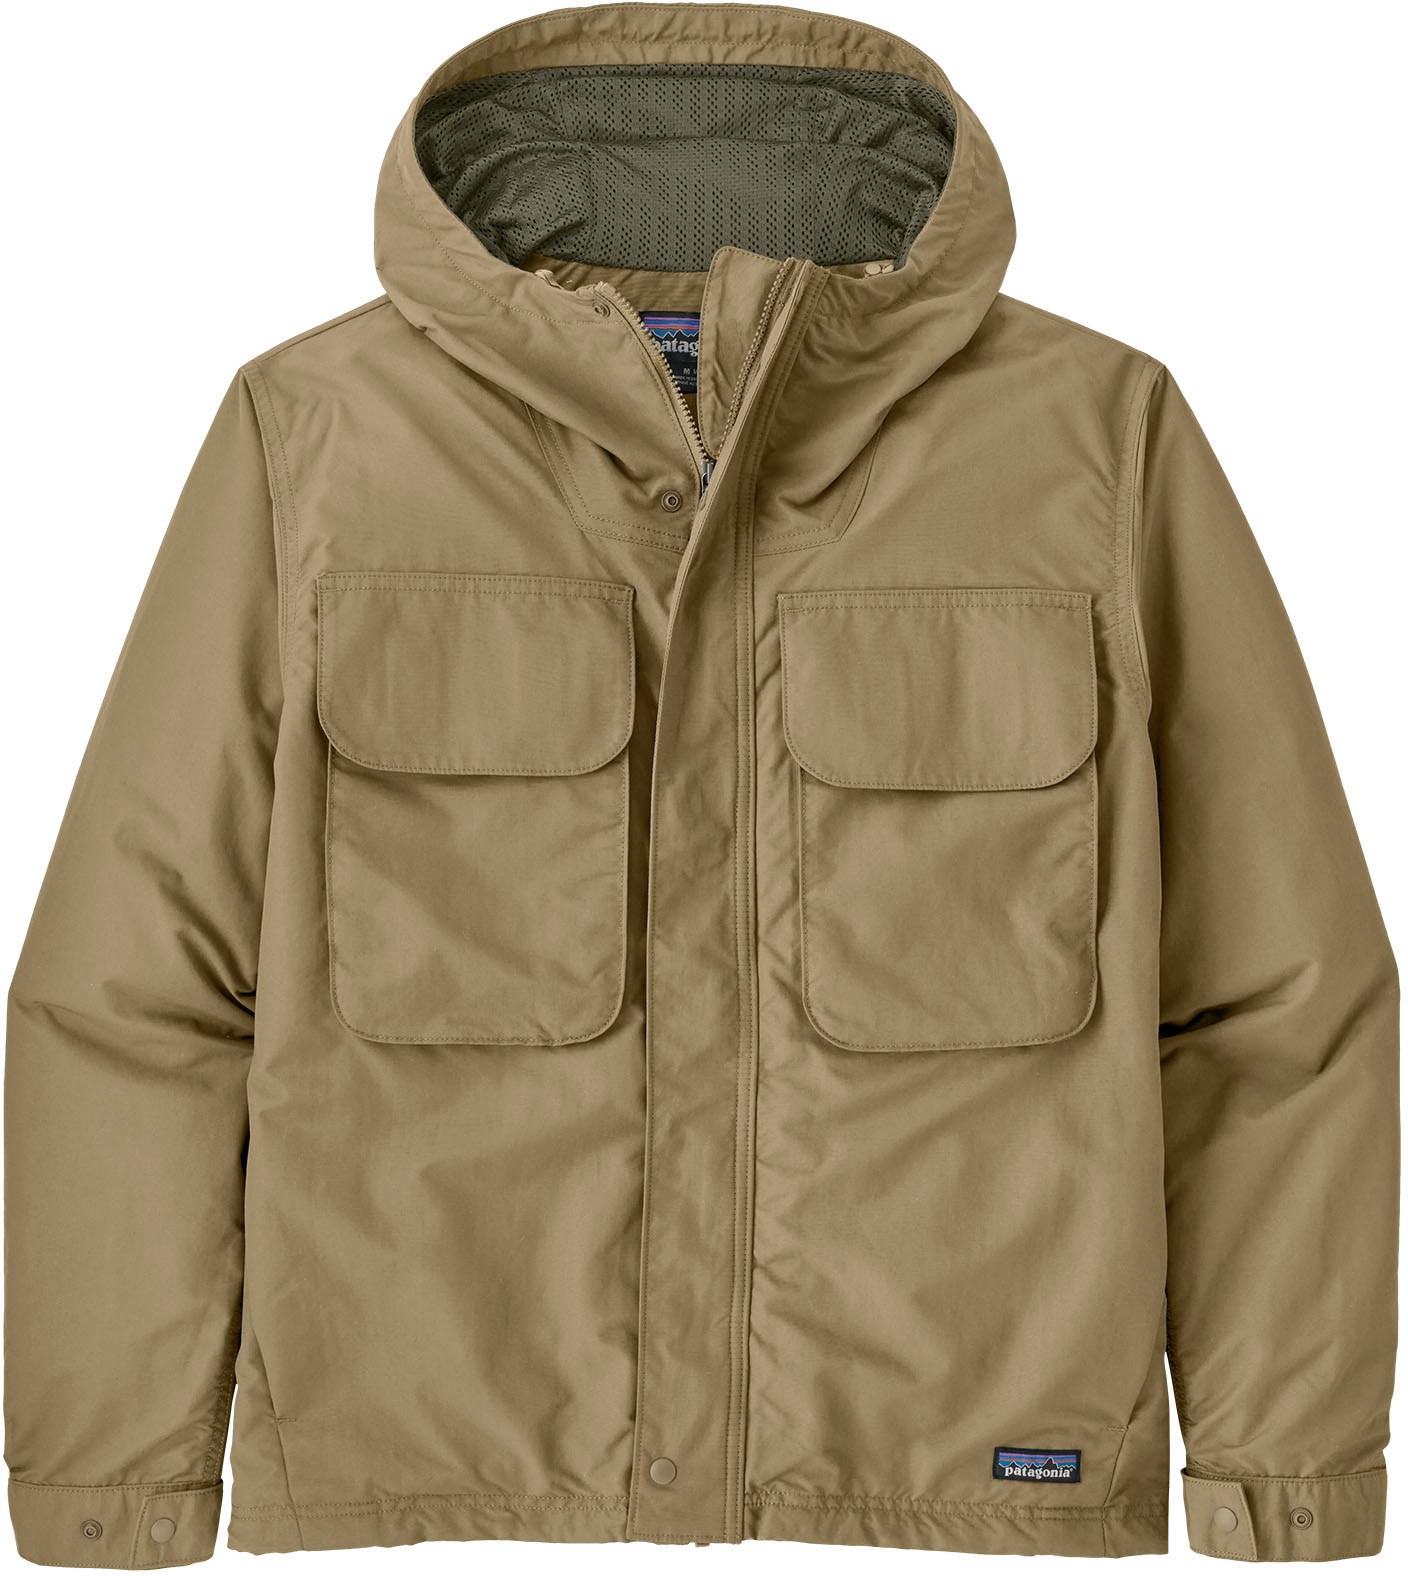 Универсальная куртка Isthmus — мужская Patagonia, хаки цена и фото